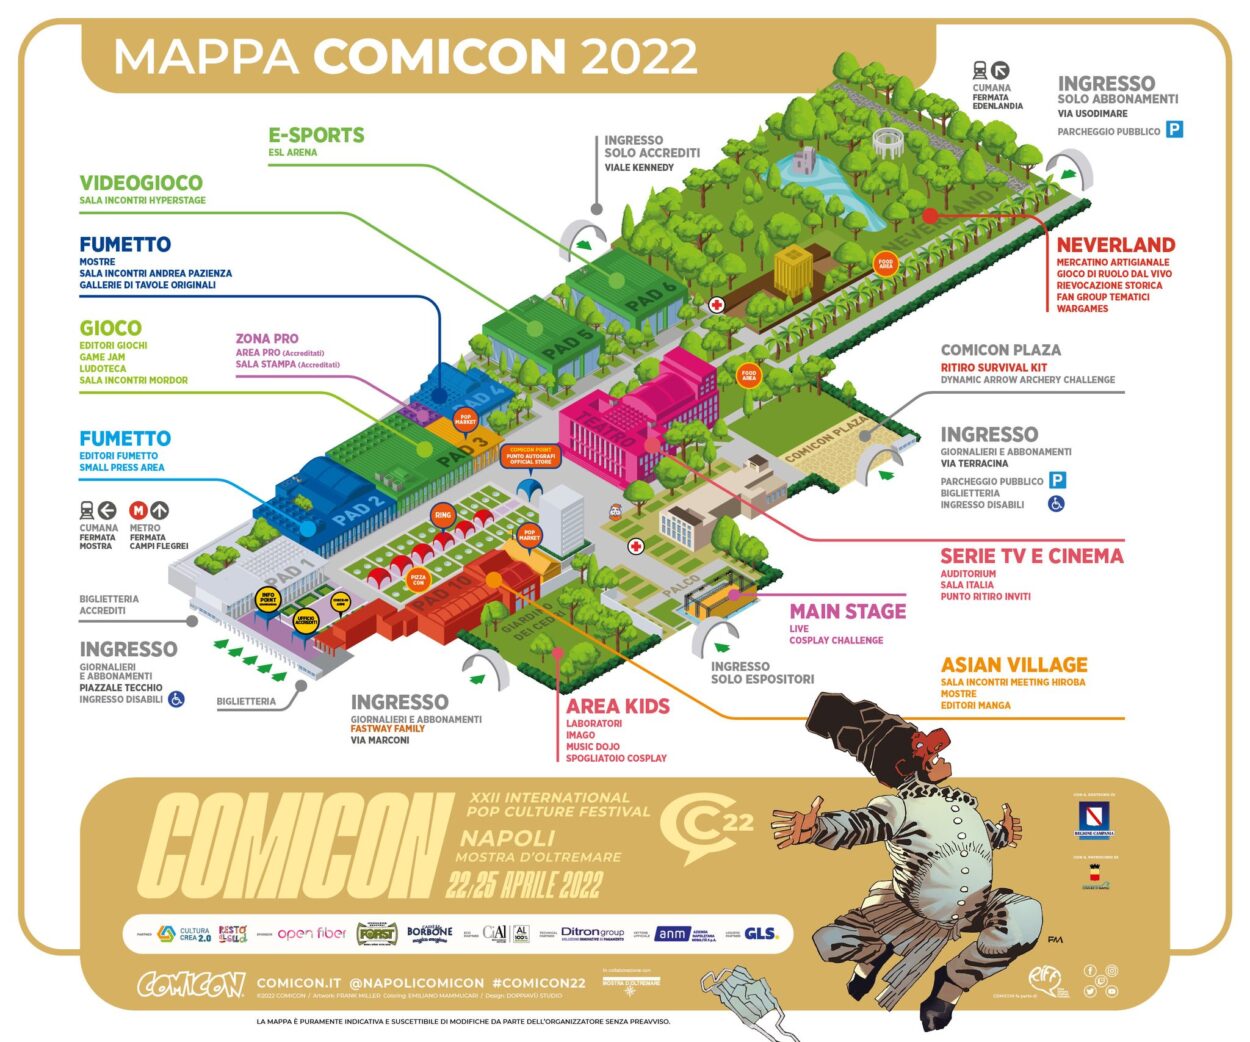 Mappa Comicon 2022